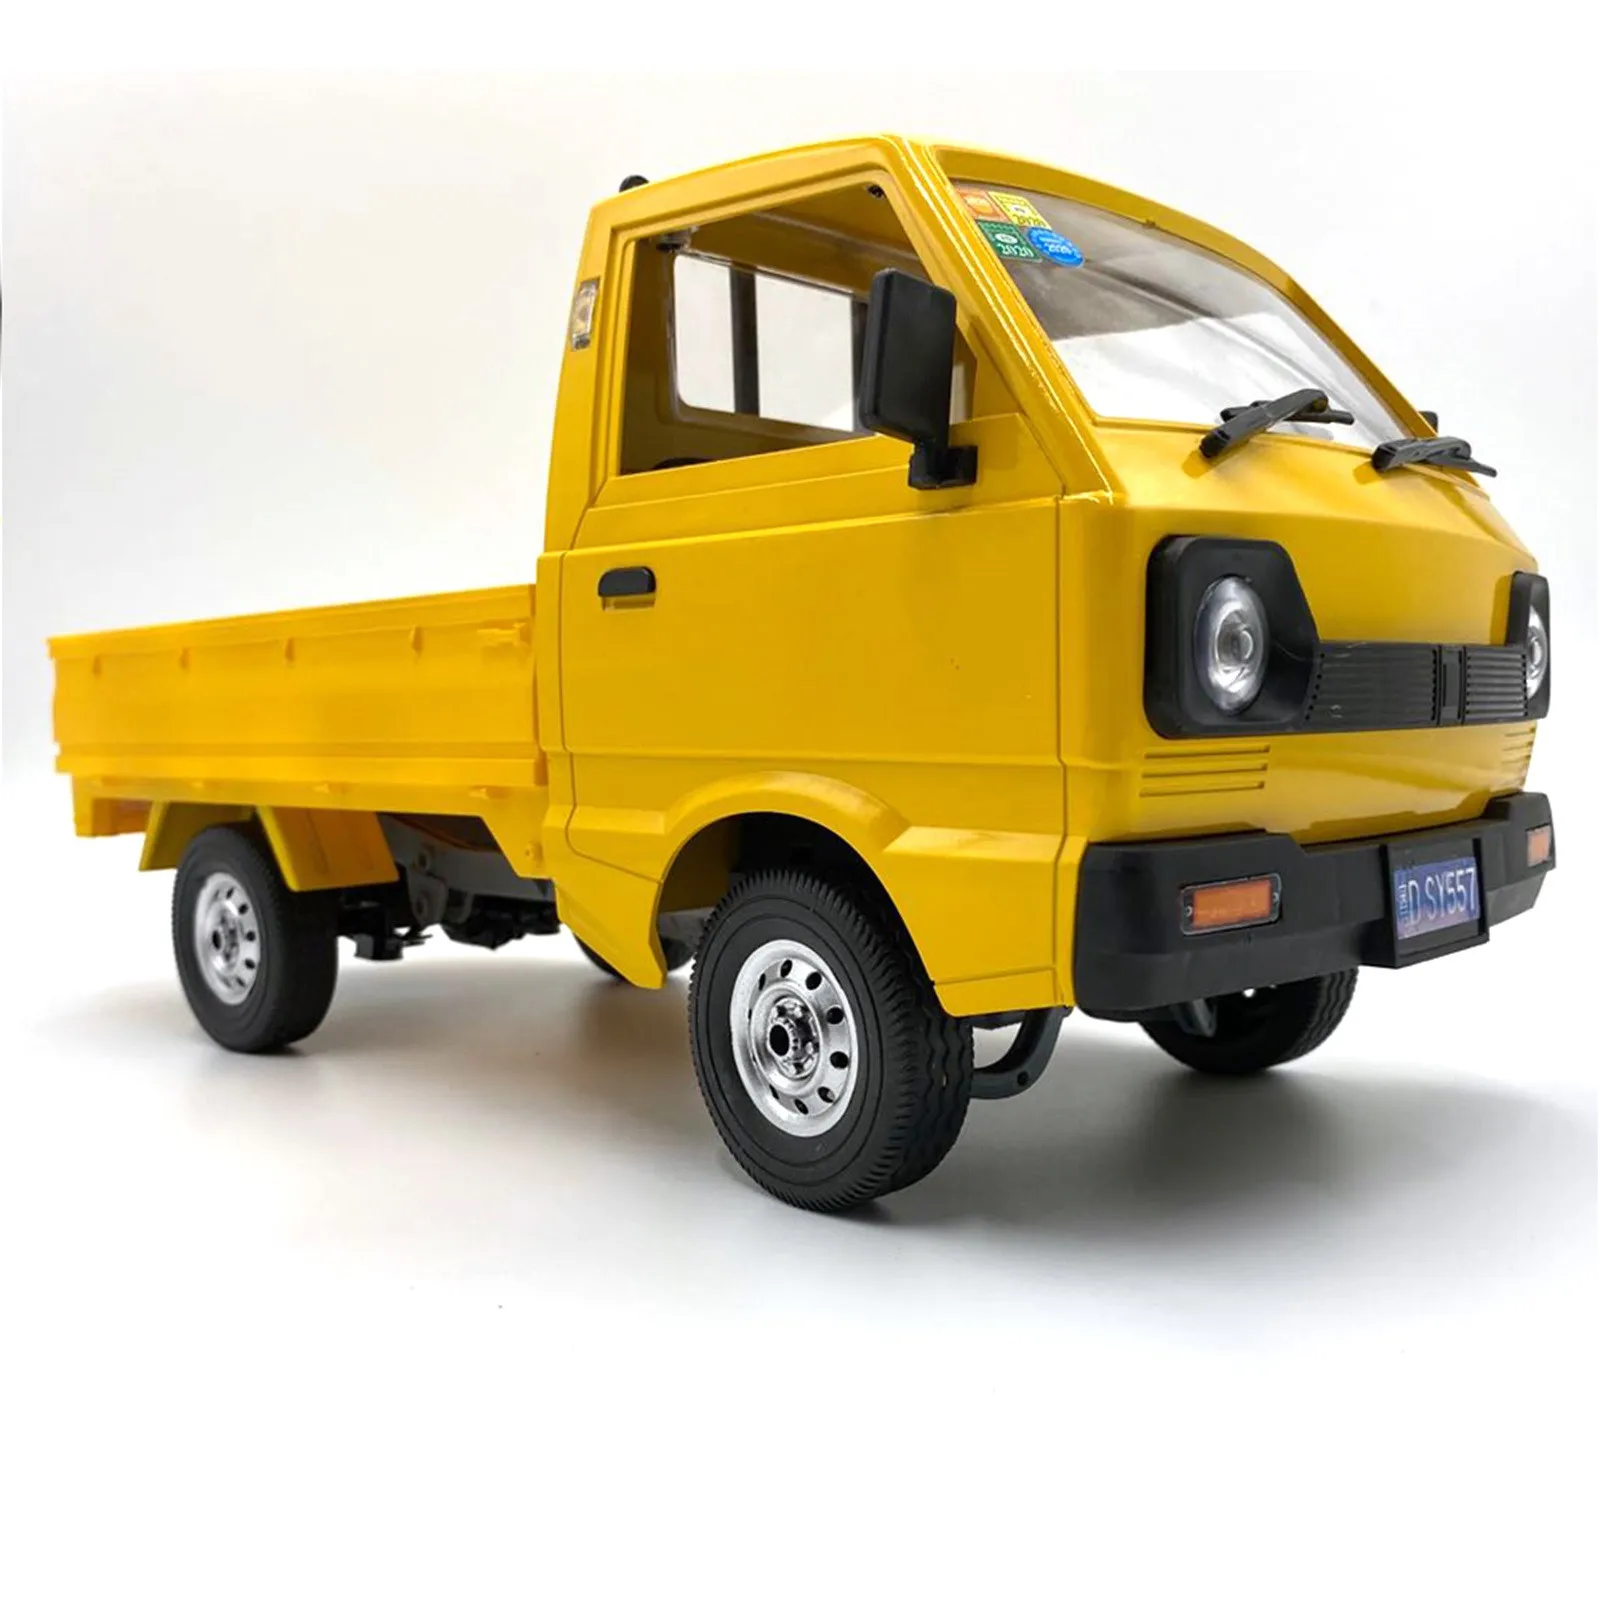 WPL D12 1/10 RC Car Simulation Drift Truck 260 Motor RC Car Goods Toy for Children Kids Cargo Trucks Model Birthday Gift